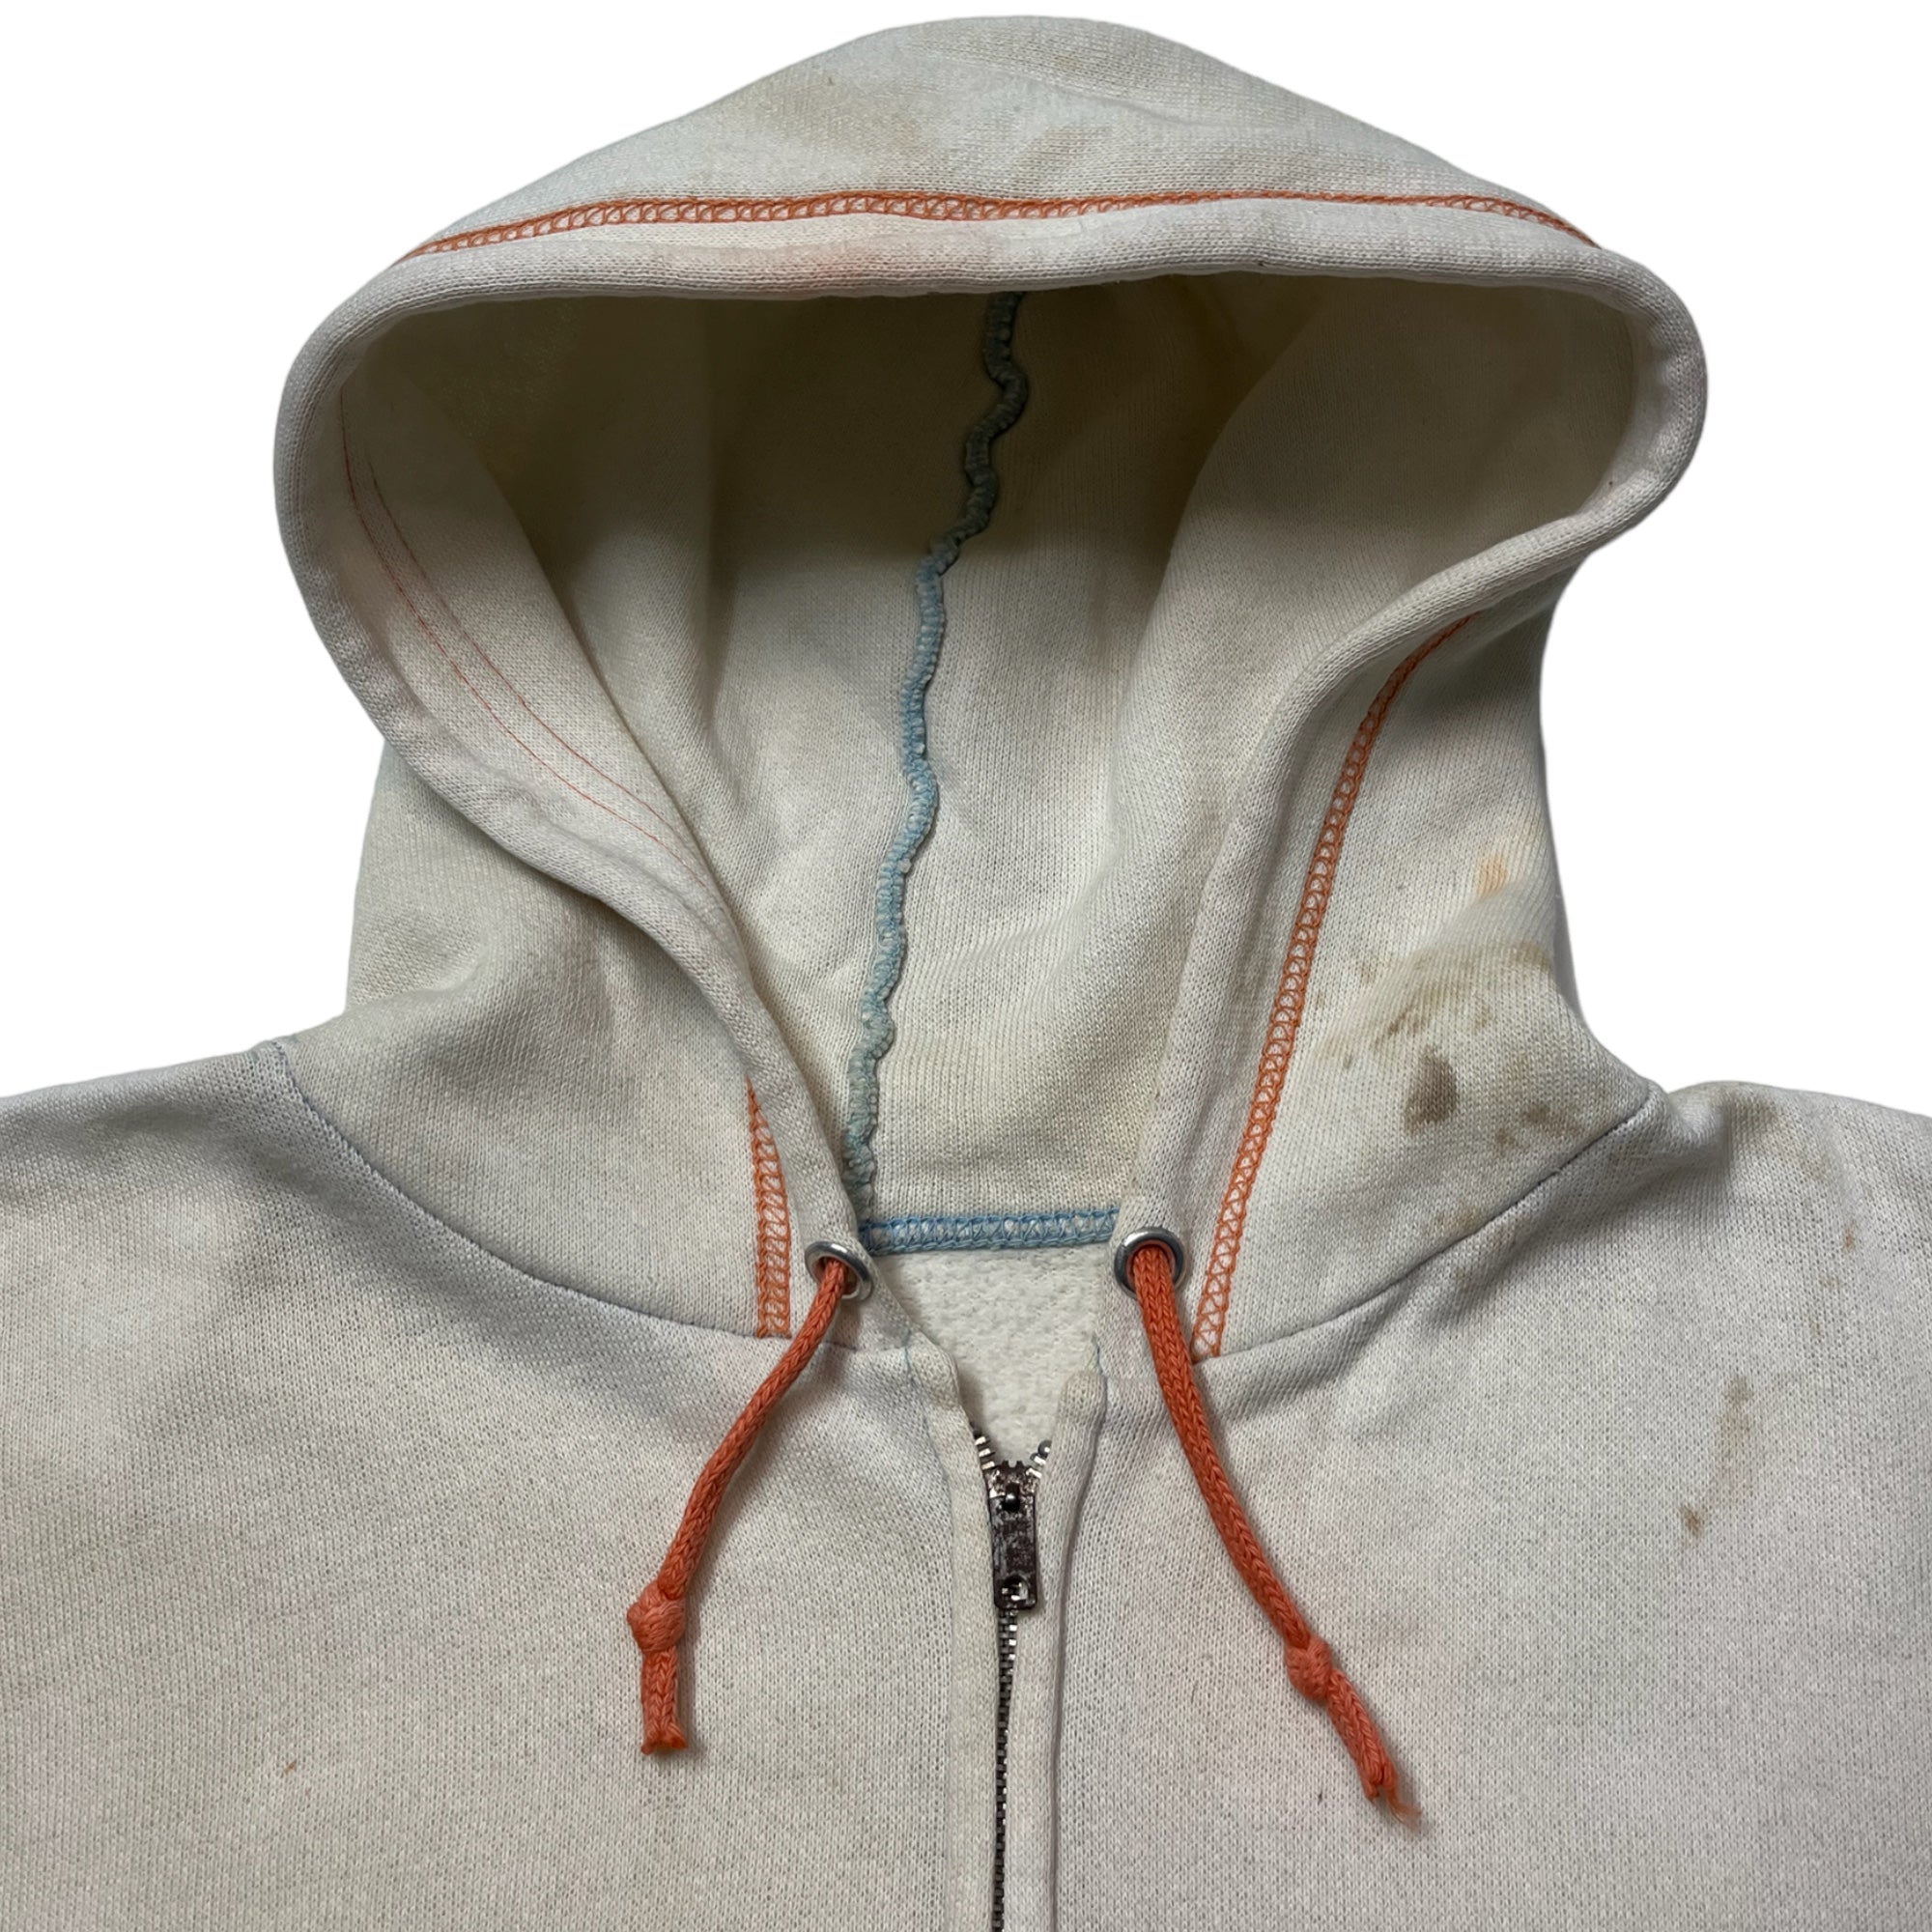 1960s Zip-Up Contrast Stitch Sweatshirt - Cream/Bleached/Orange/Blue - XS/S